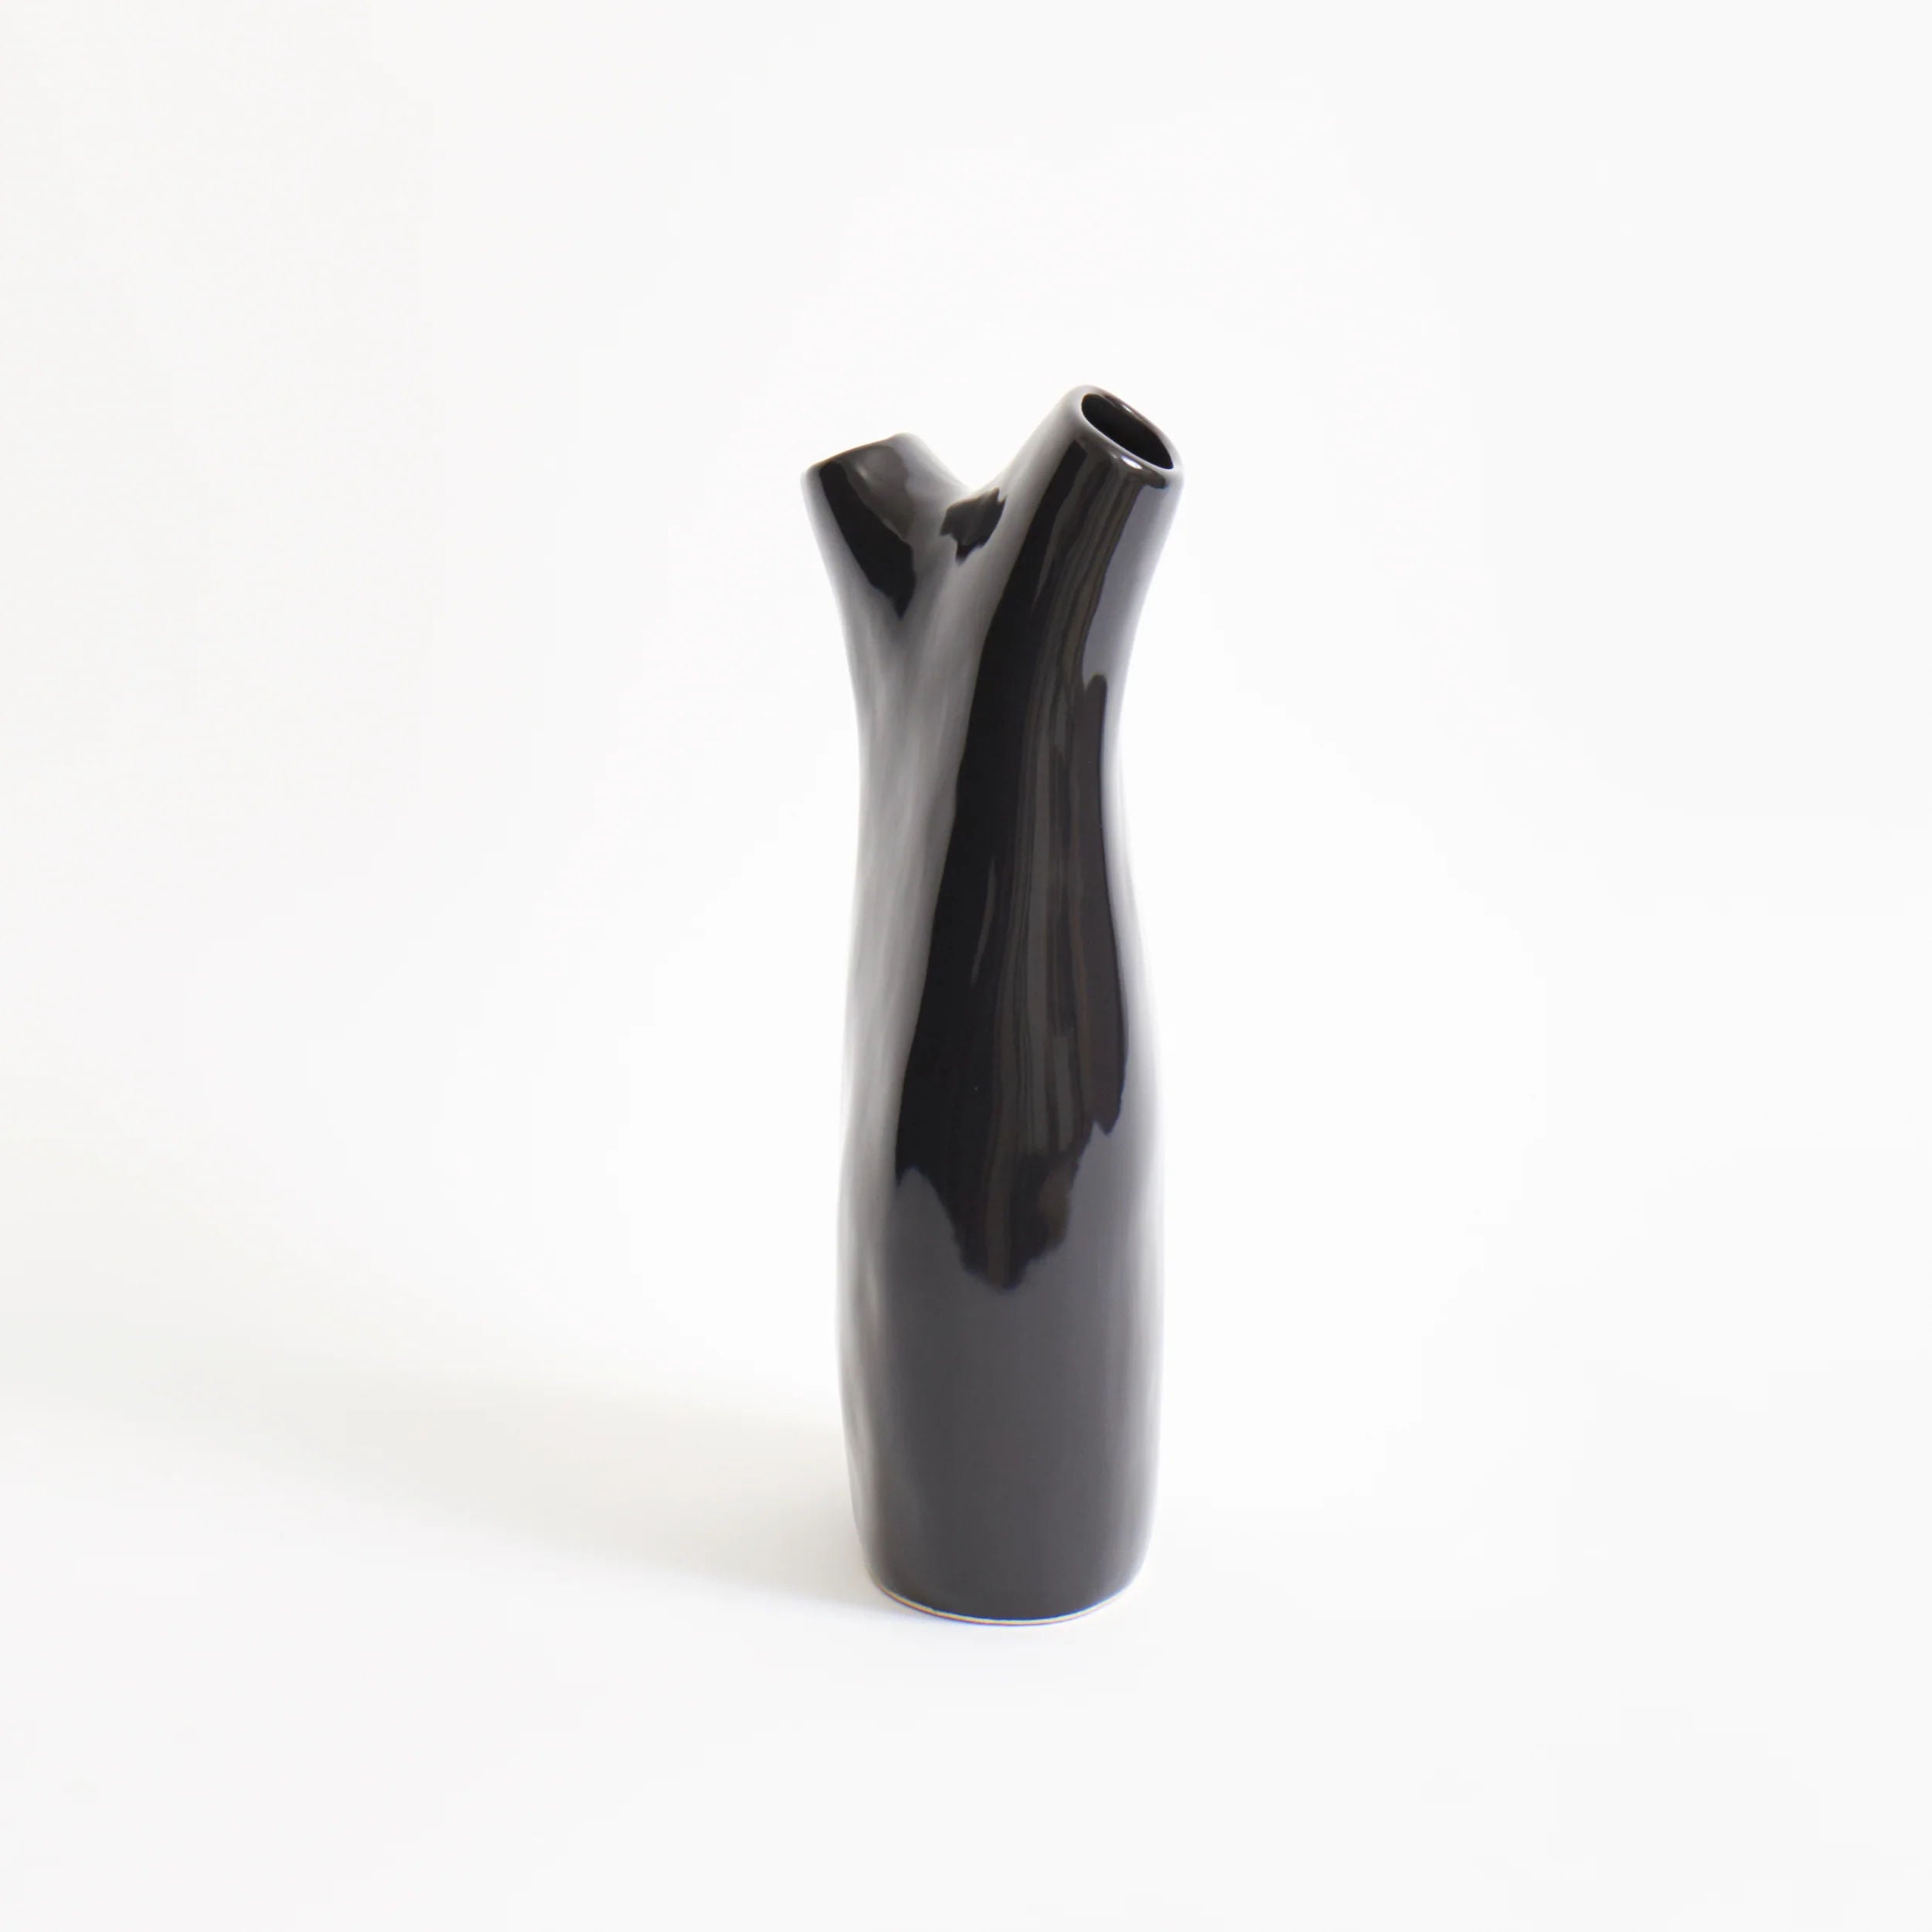 Vases Gemini Vase in Shiny Black Project 213A